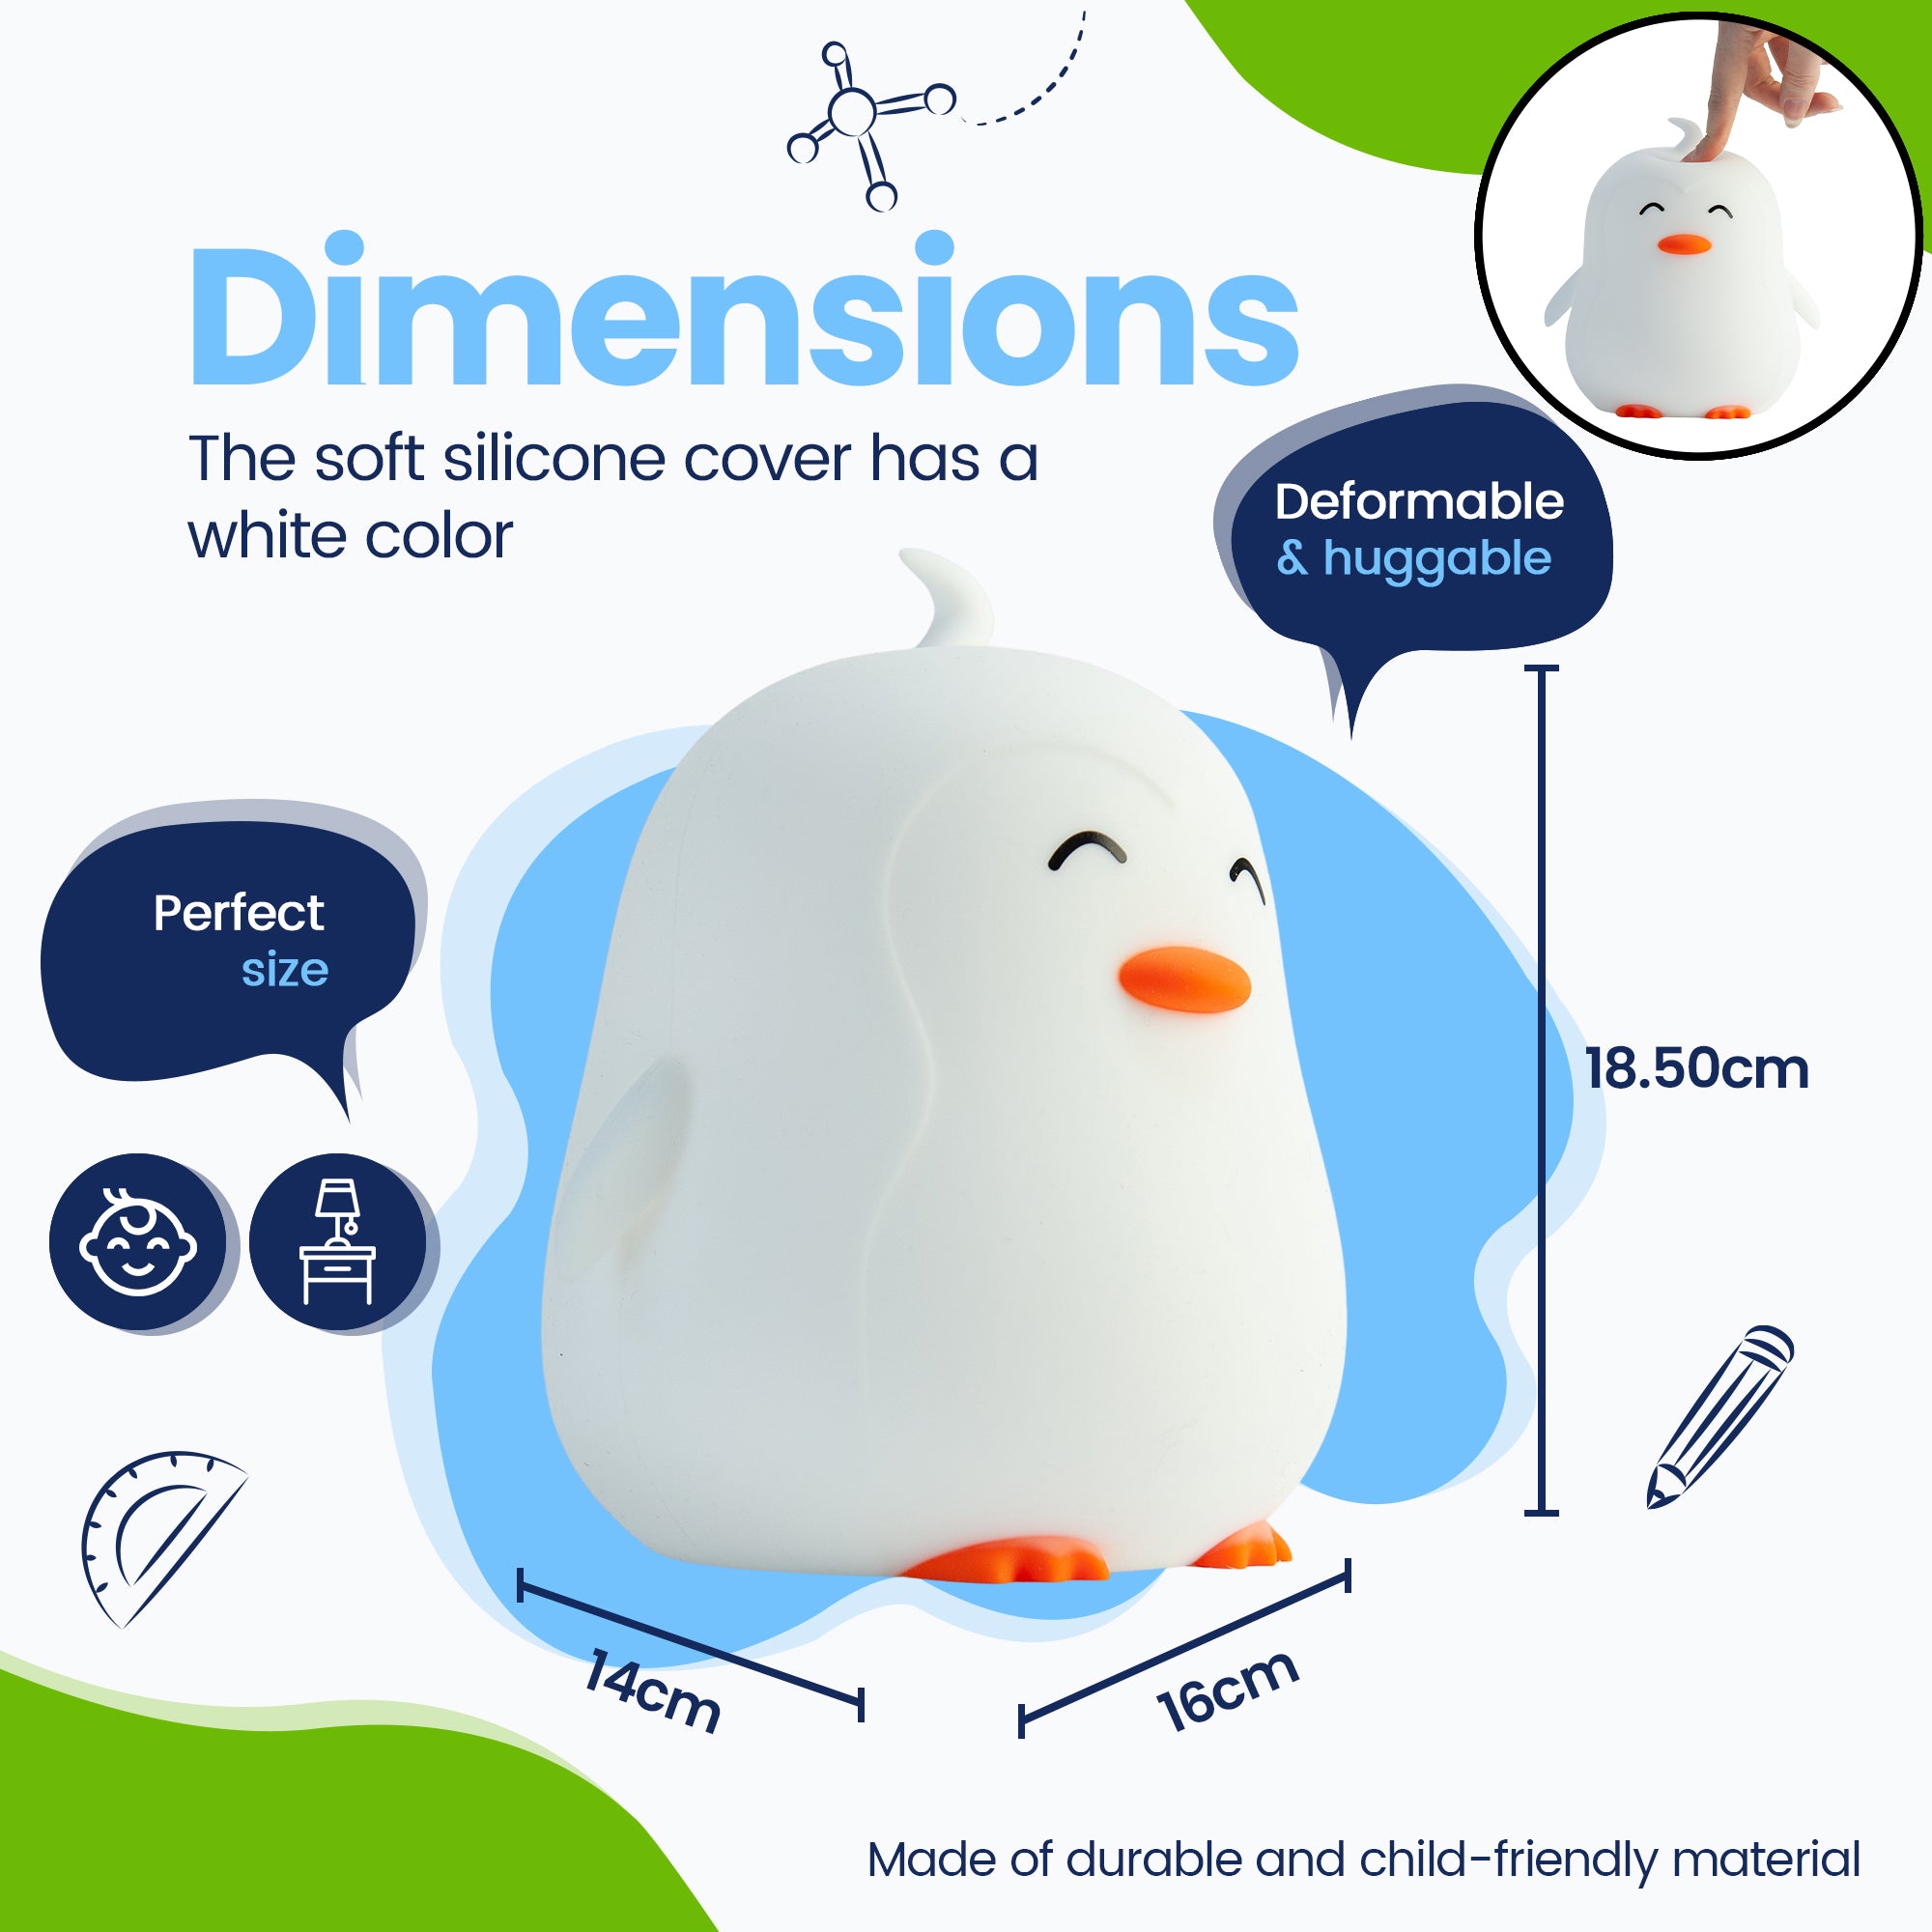 Dimensioner - Pingvin Natlampe - Perfekt størrelse - Premium Design - Silikoneovertrækket er hvidt i farven